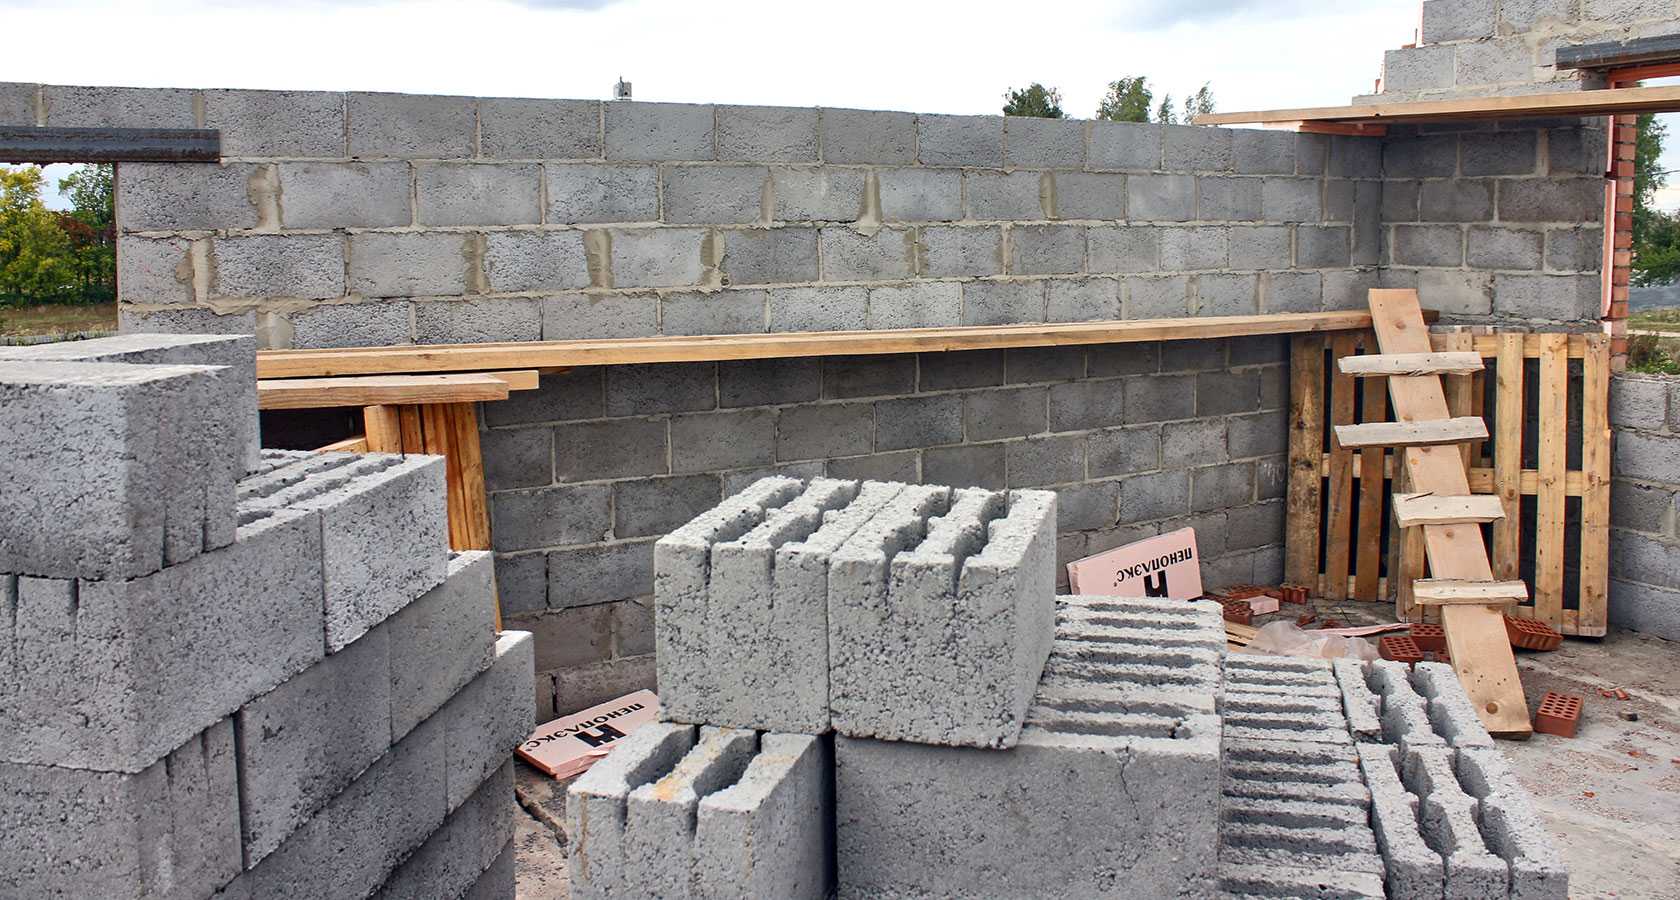 Керамзитобетонные блоки для строительства домов — технология использования